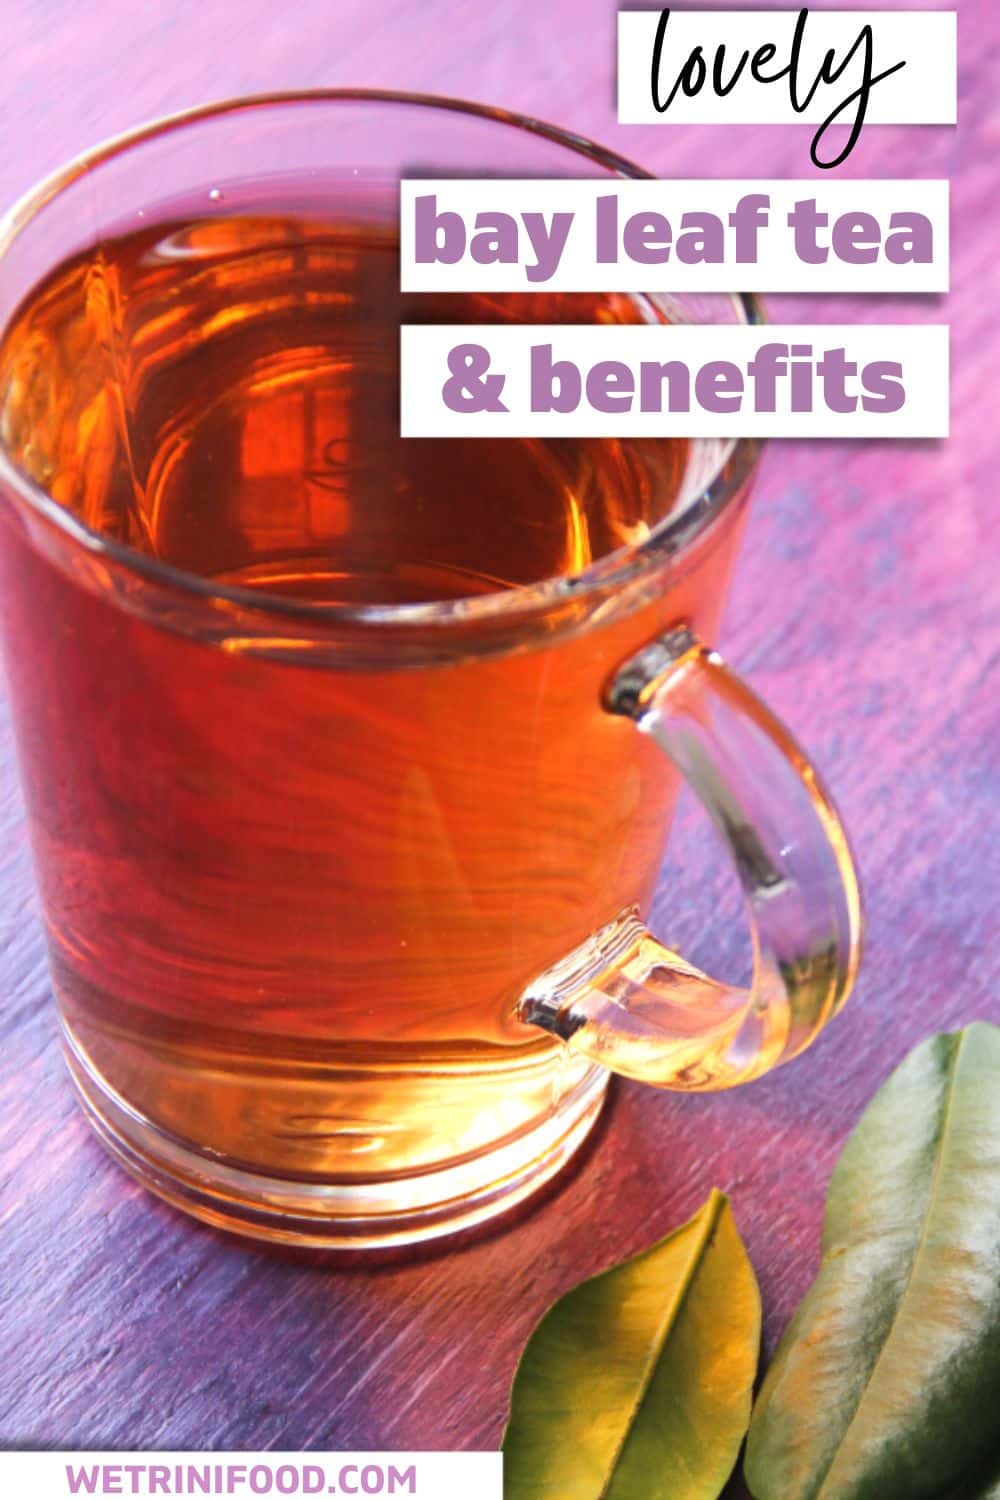 bay leaf tea & benefits pinterest image